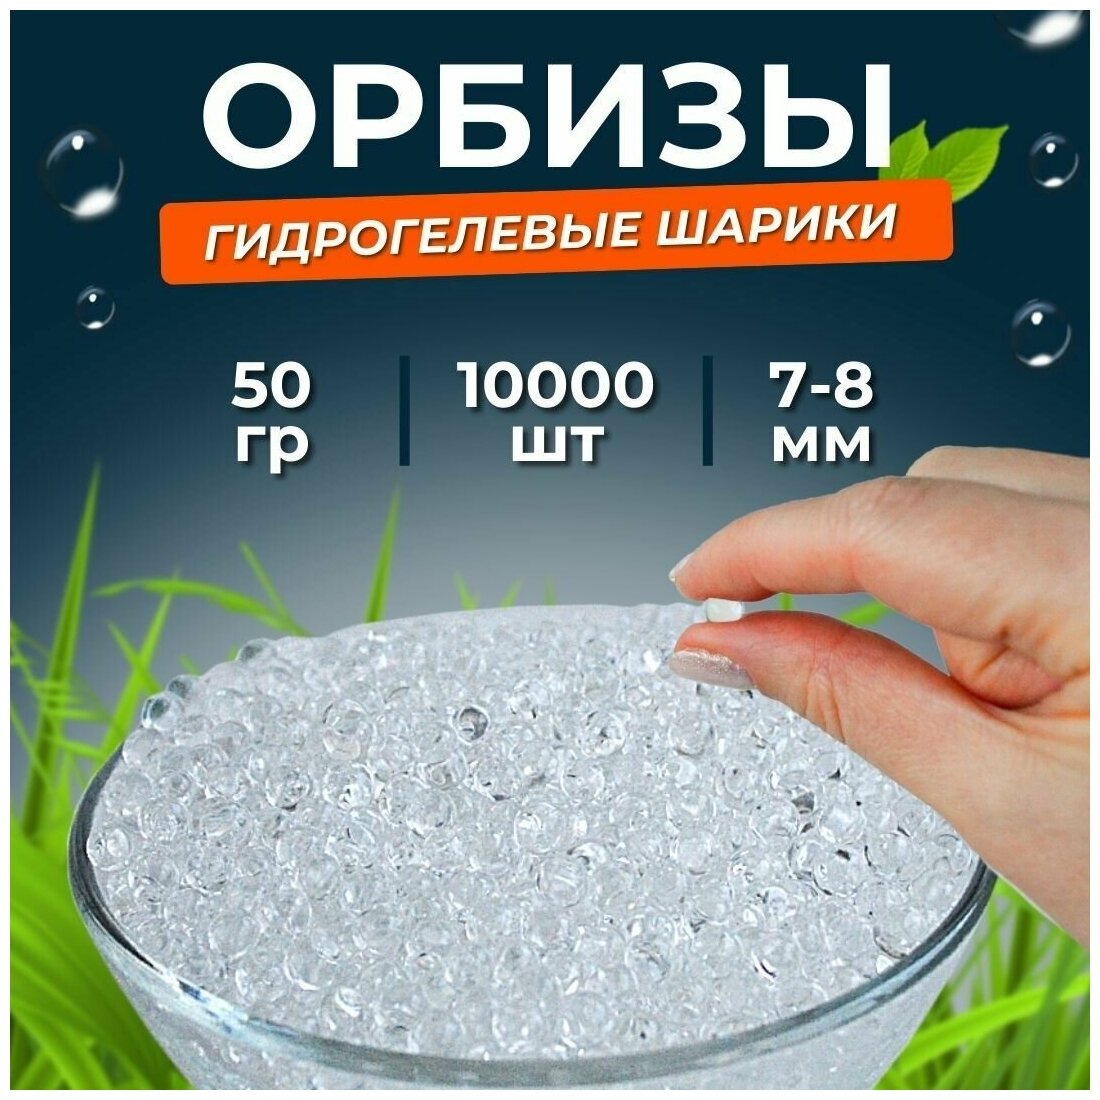 Орбиз-шары для аквагрунта 7-8 мм 10.000 шт, прозрачные, 50 грамм.